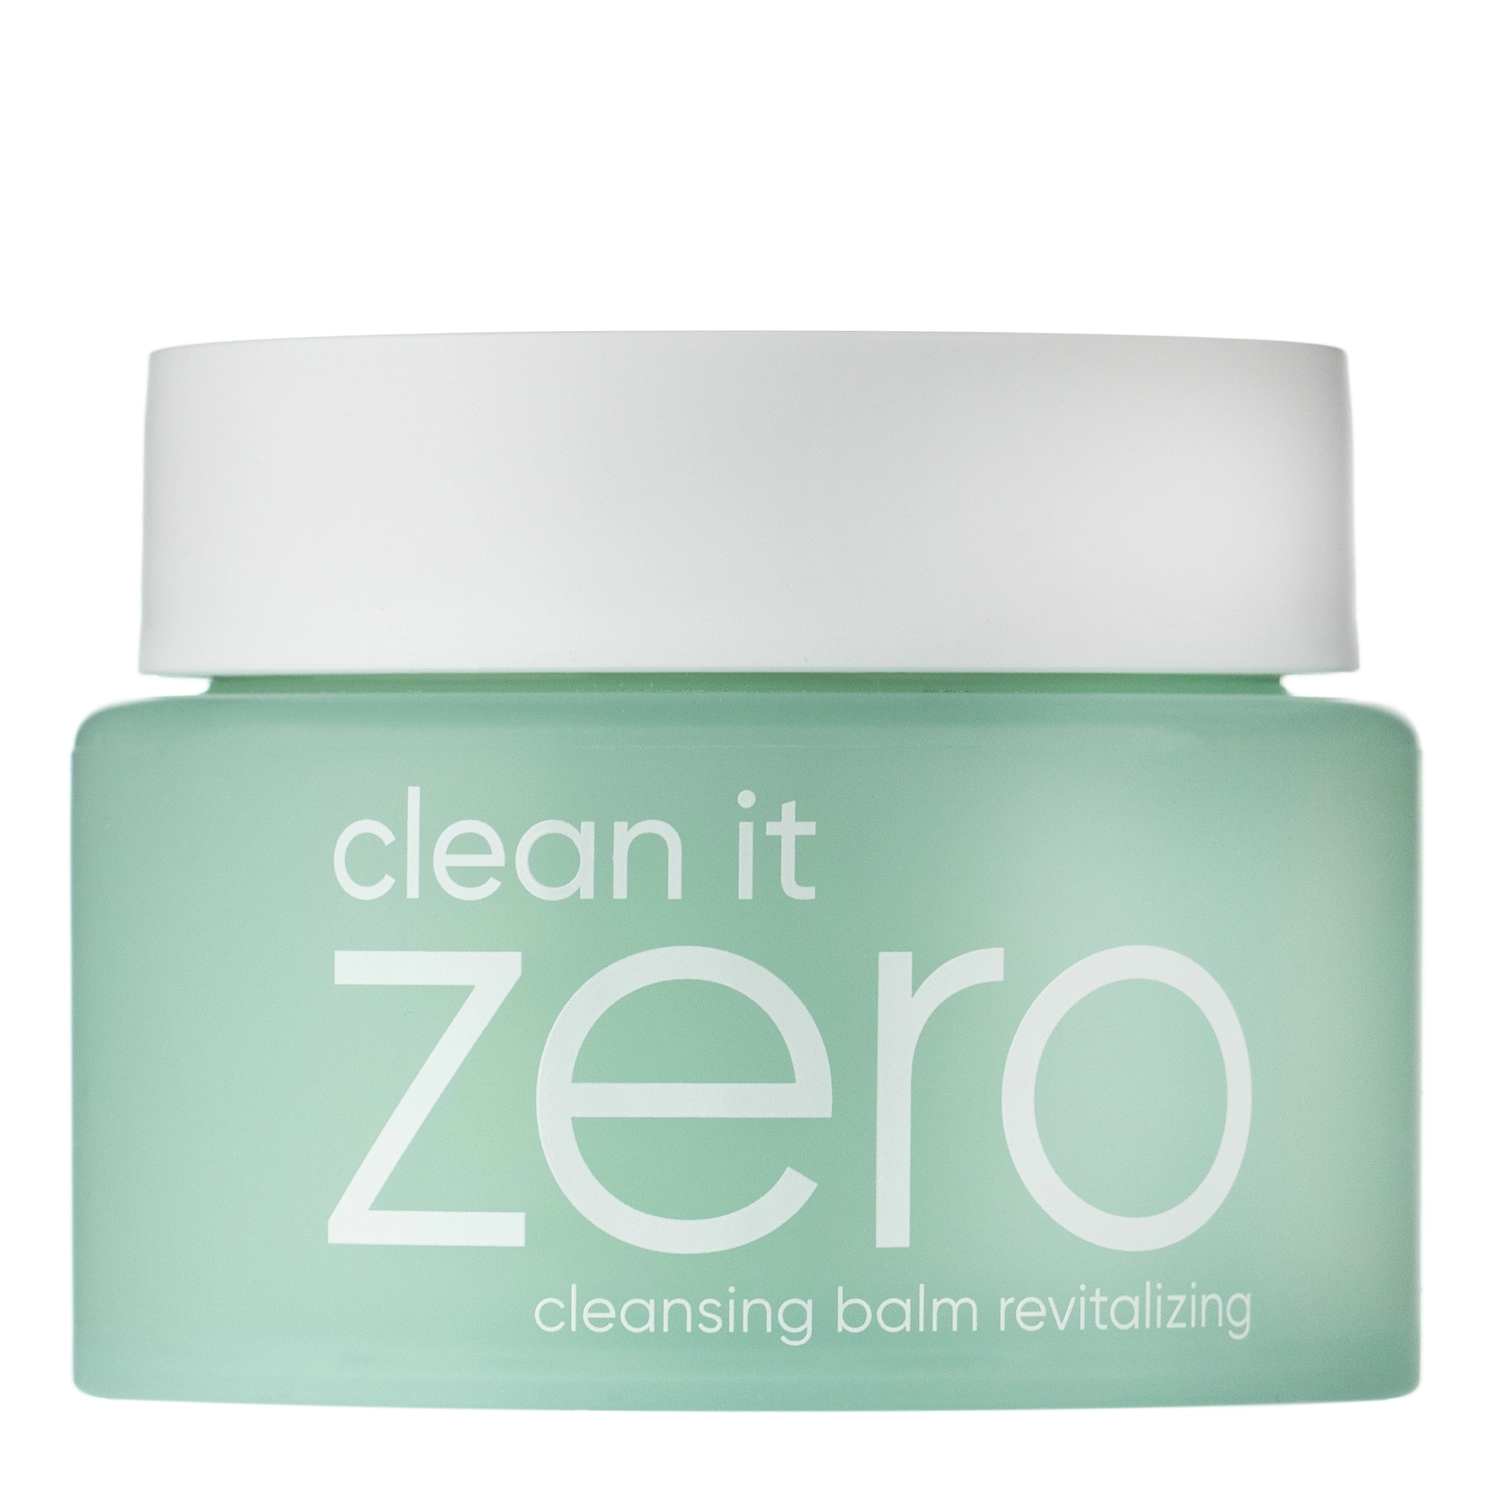 Banila Co - Clean It Zero Cleansing Balm - Revitalizing - Öregedésgátló Sörbet állagú Tisztító Olaj - 100ml